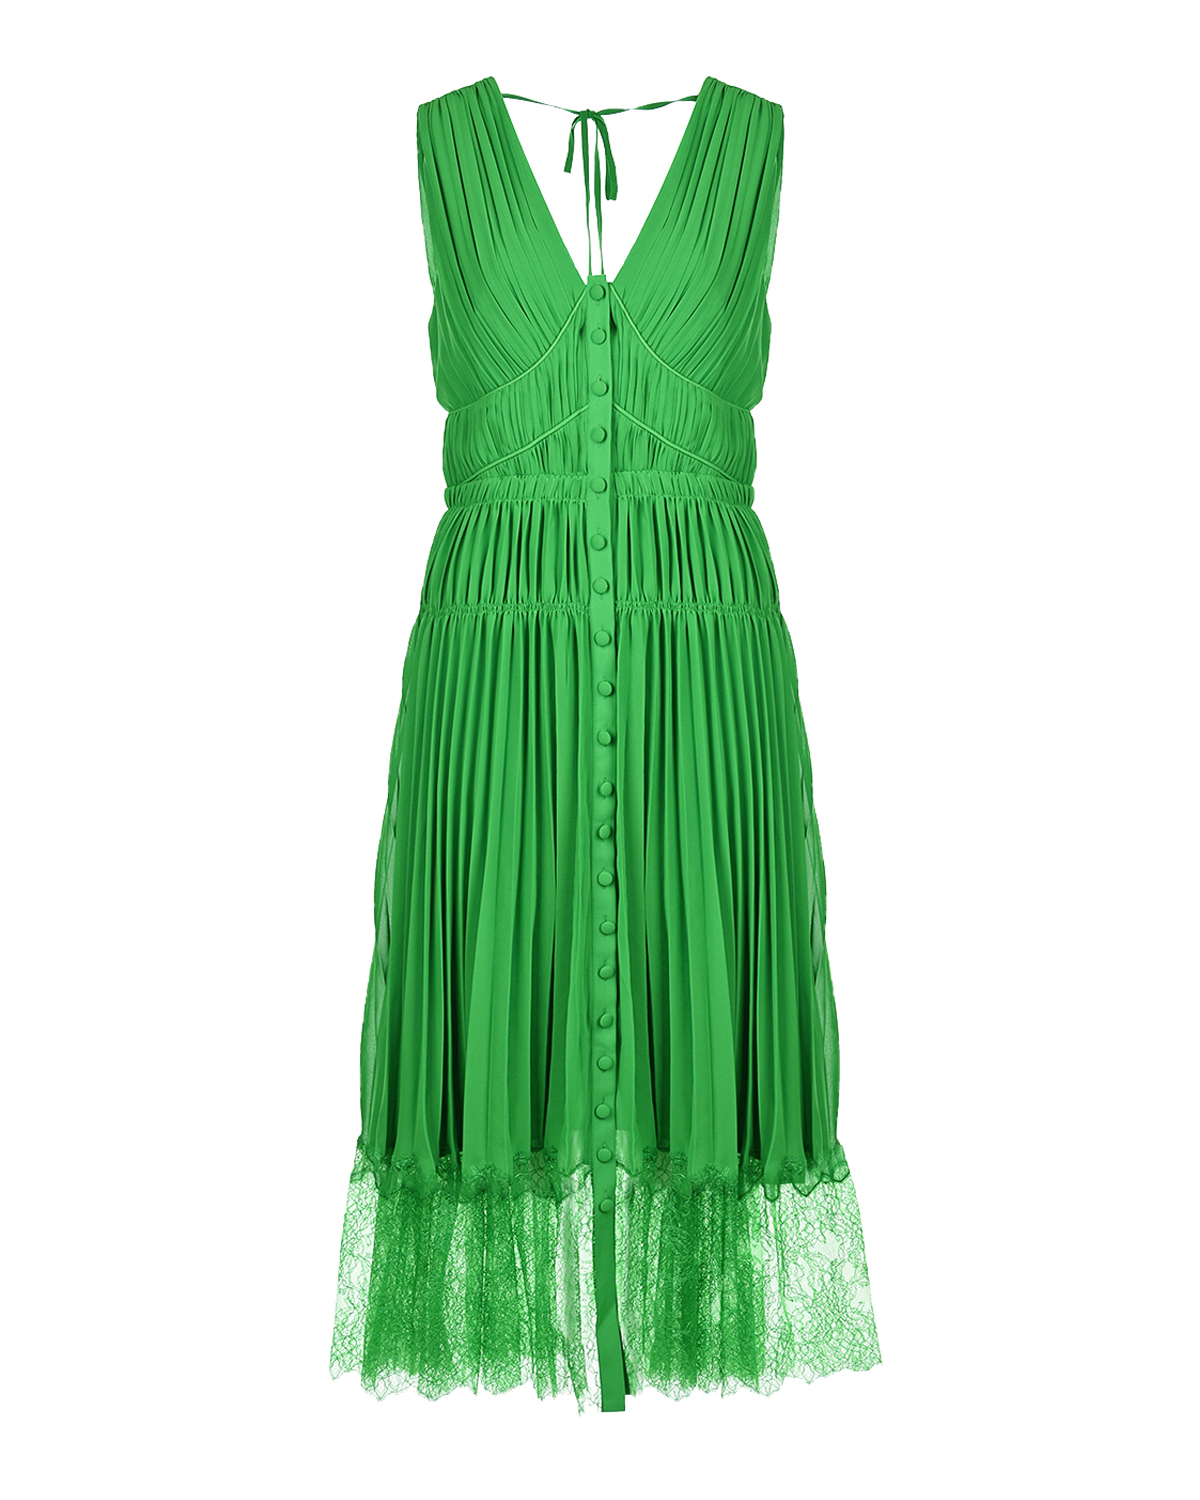 Зеленое платье с кружевной отделкой Self Portrait, размер 40, цвет зеленый - фото 1